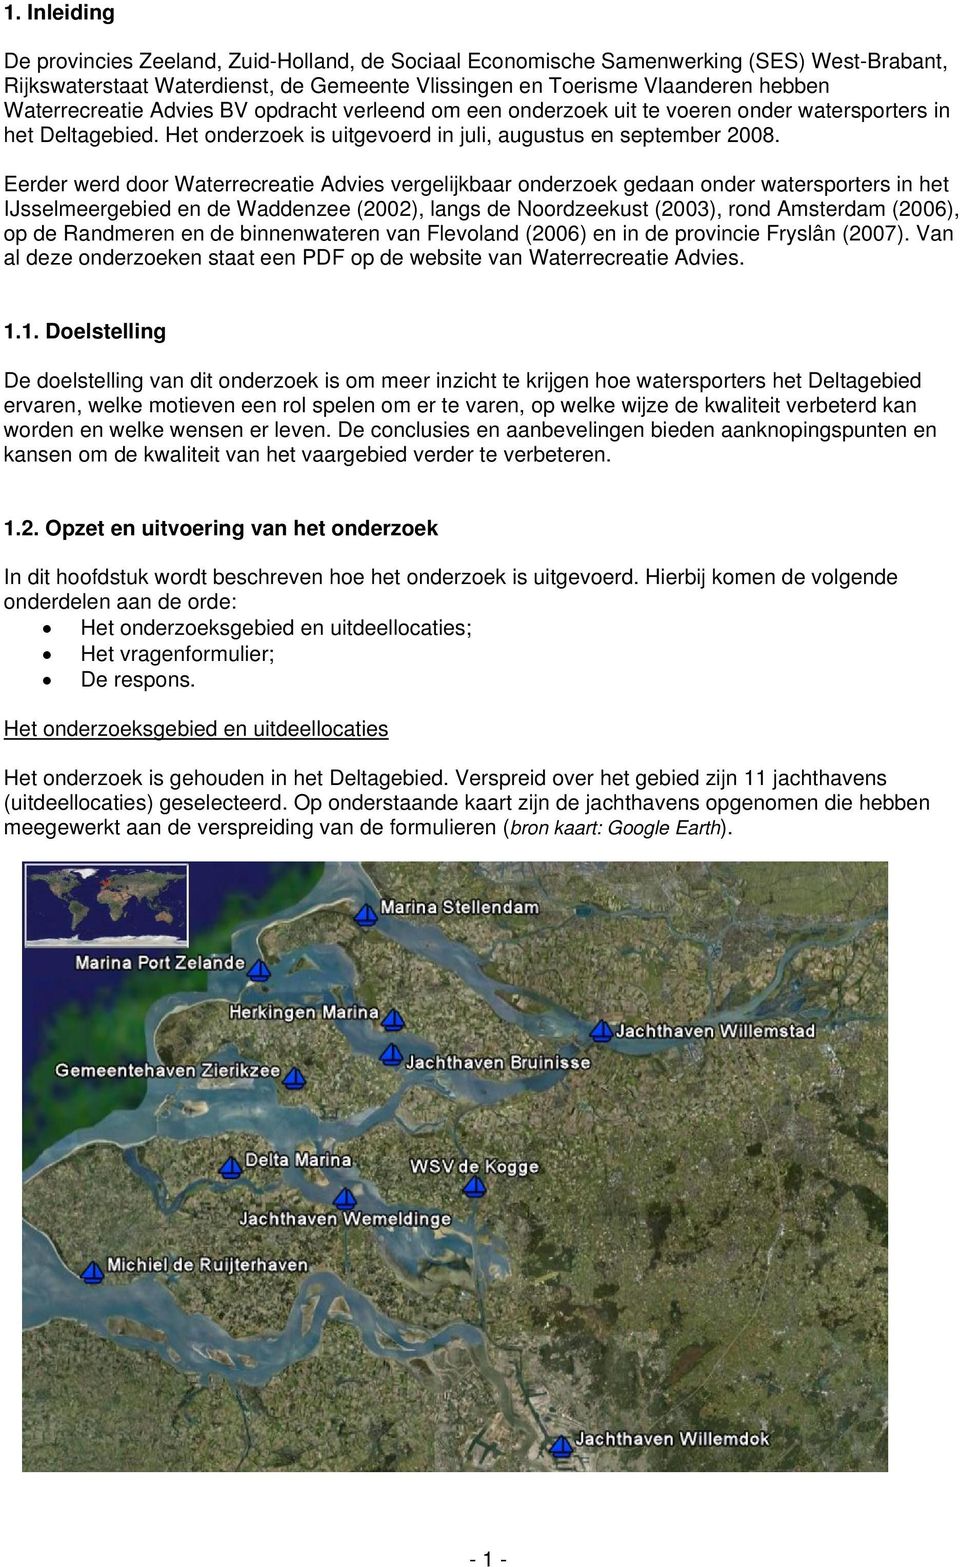 Eerder werd door Waterrecreatie Advies vergelijkbaar onderzoek gedaan onder watersporters in het IJsselmeergebied en de Waddenzee (2002), langs de Noordzeekust (2003), rond Amsterdam (2006), op de